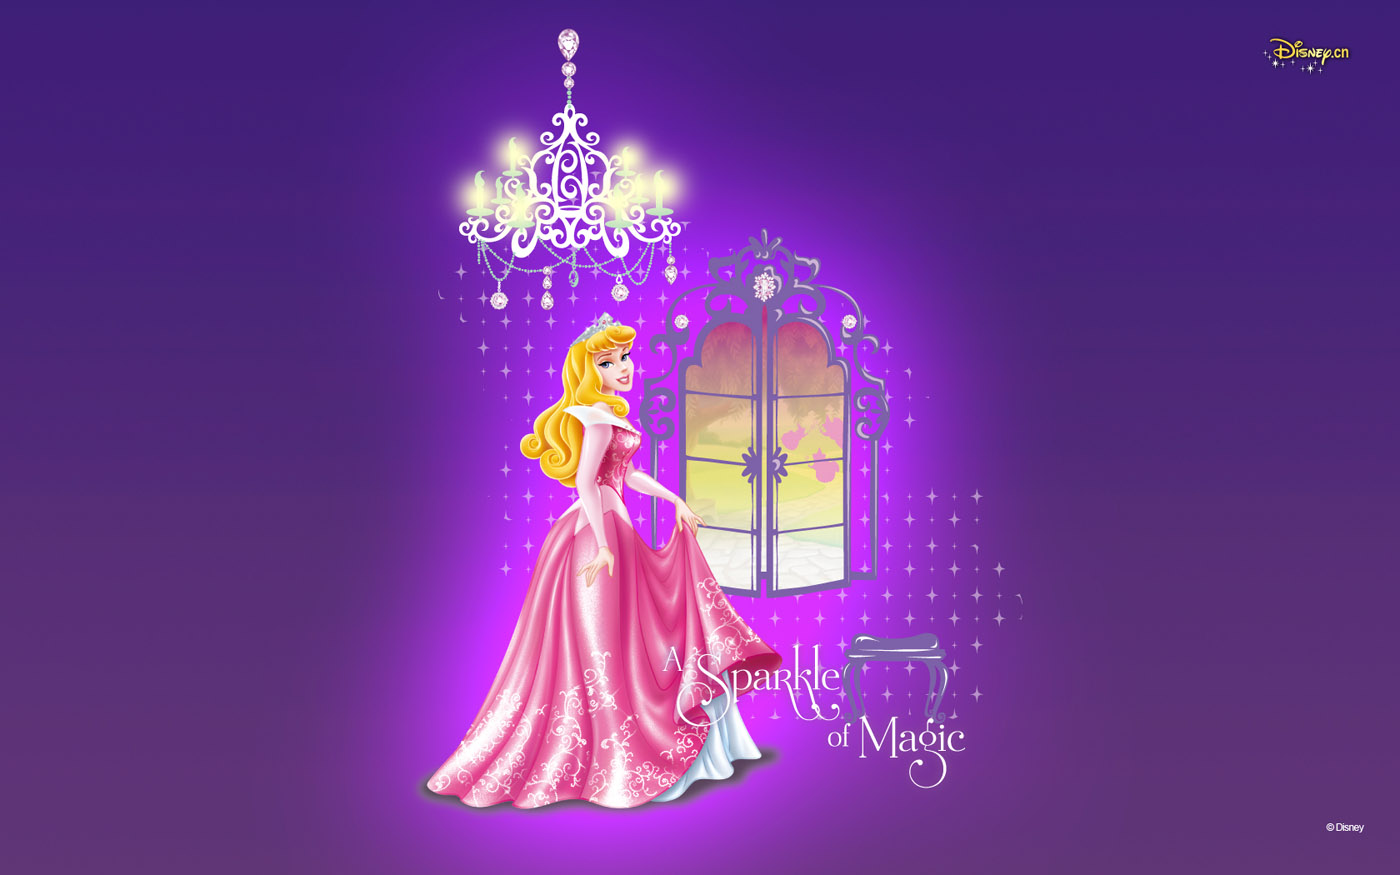 Disney Princess - Fondos De La Bella Durmiente Para Invitaciones - HD Wallpaper 